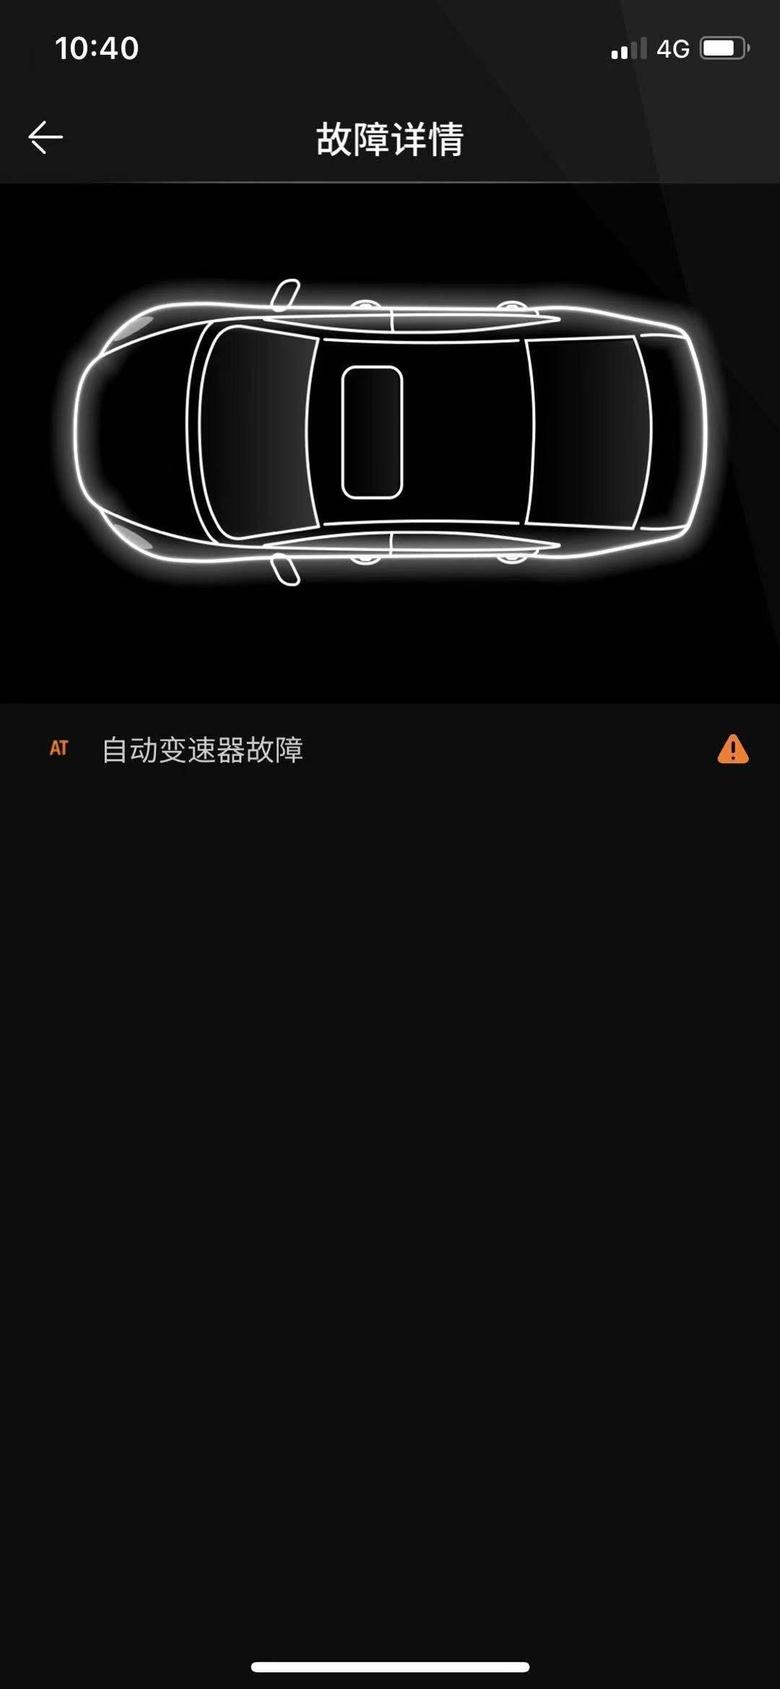 阿特兹 马自达app显示变速箱故障，大家有没有碰到过新车1000km仪表盘未亮故障灯